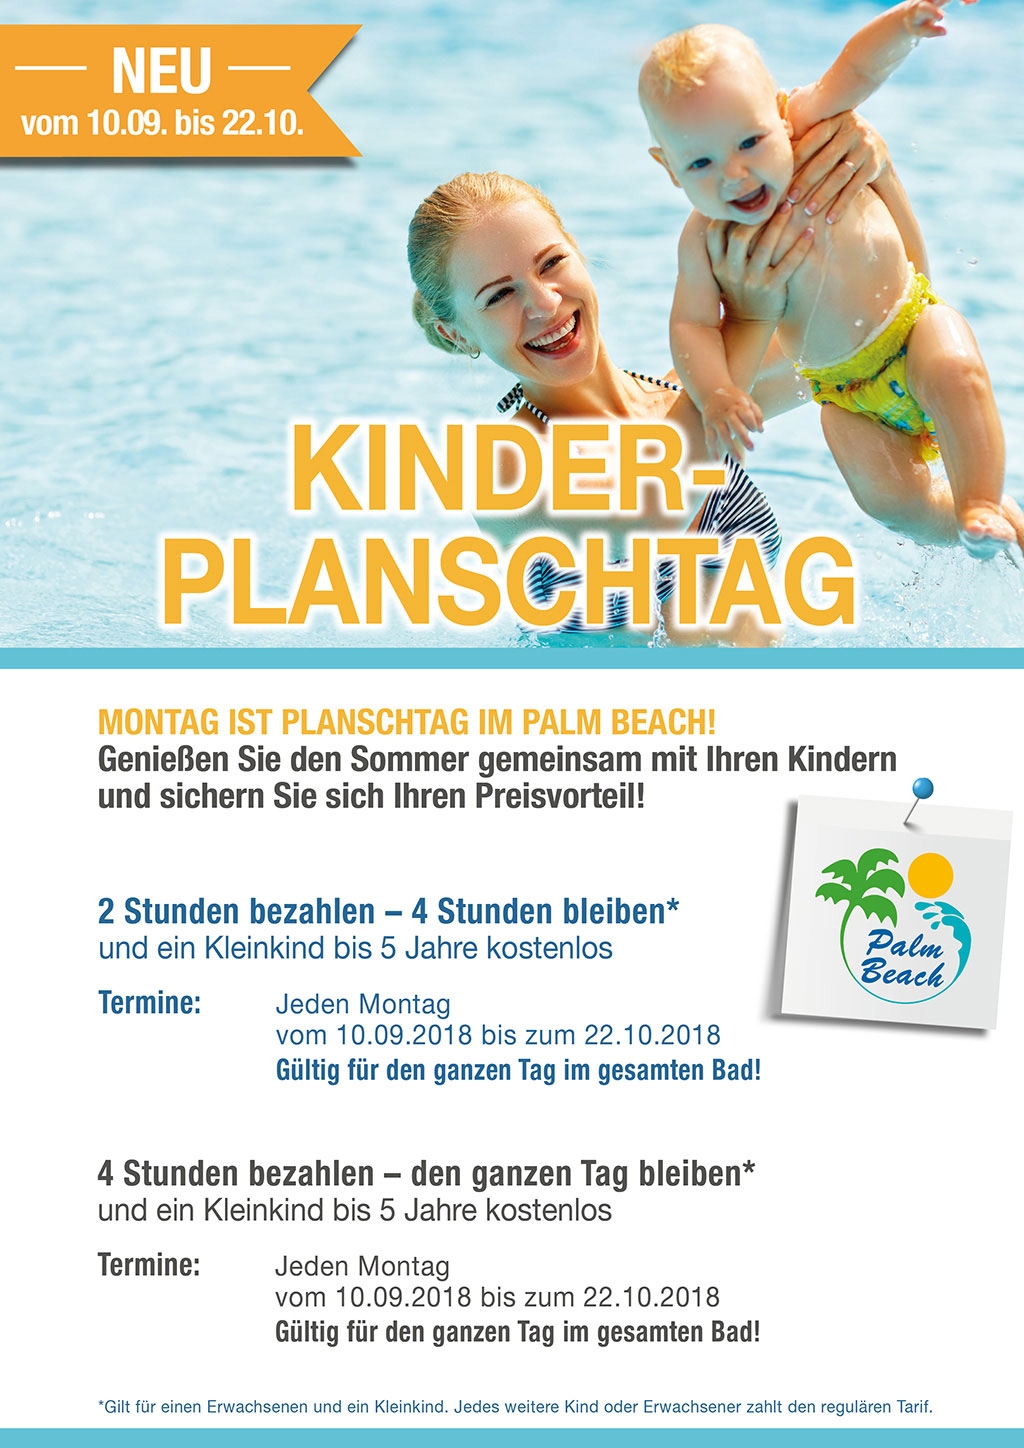 PalmBeach Kinder-Planschtag